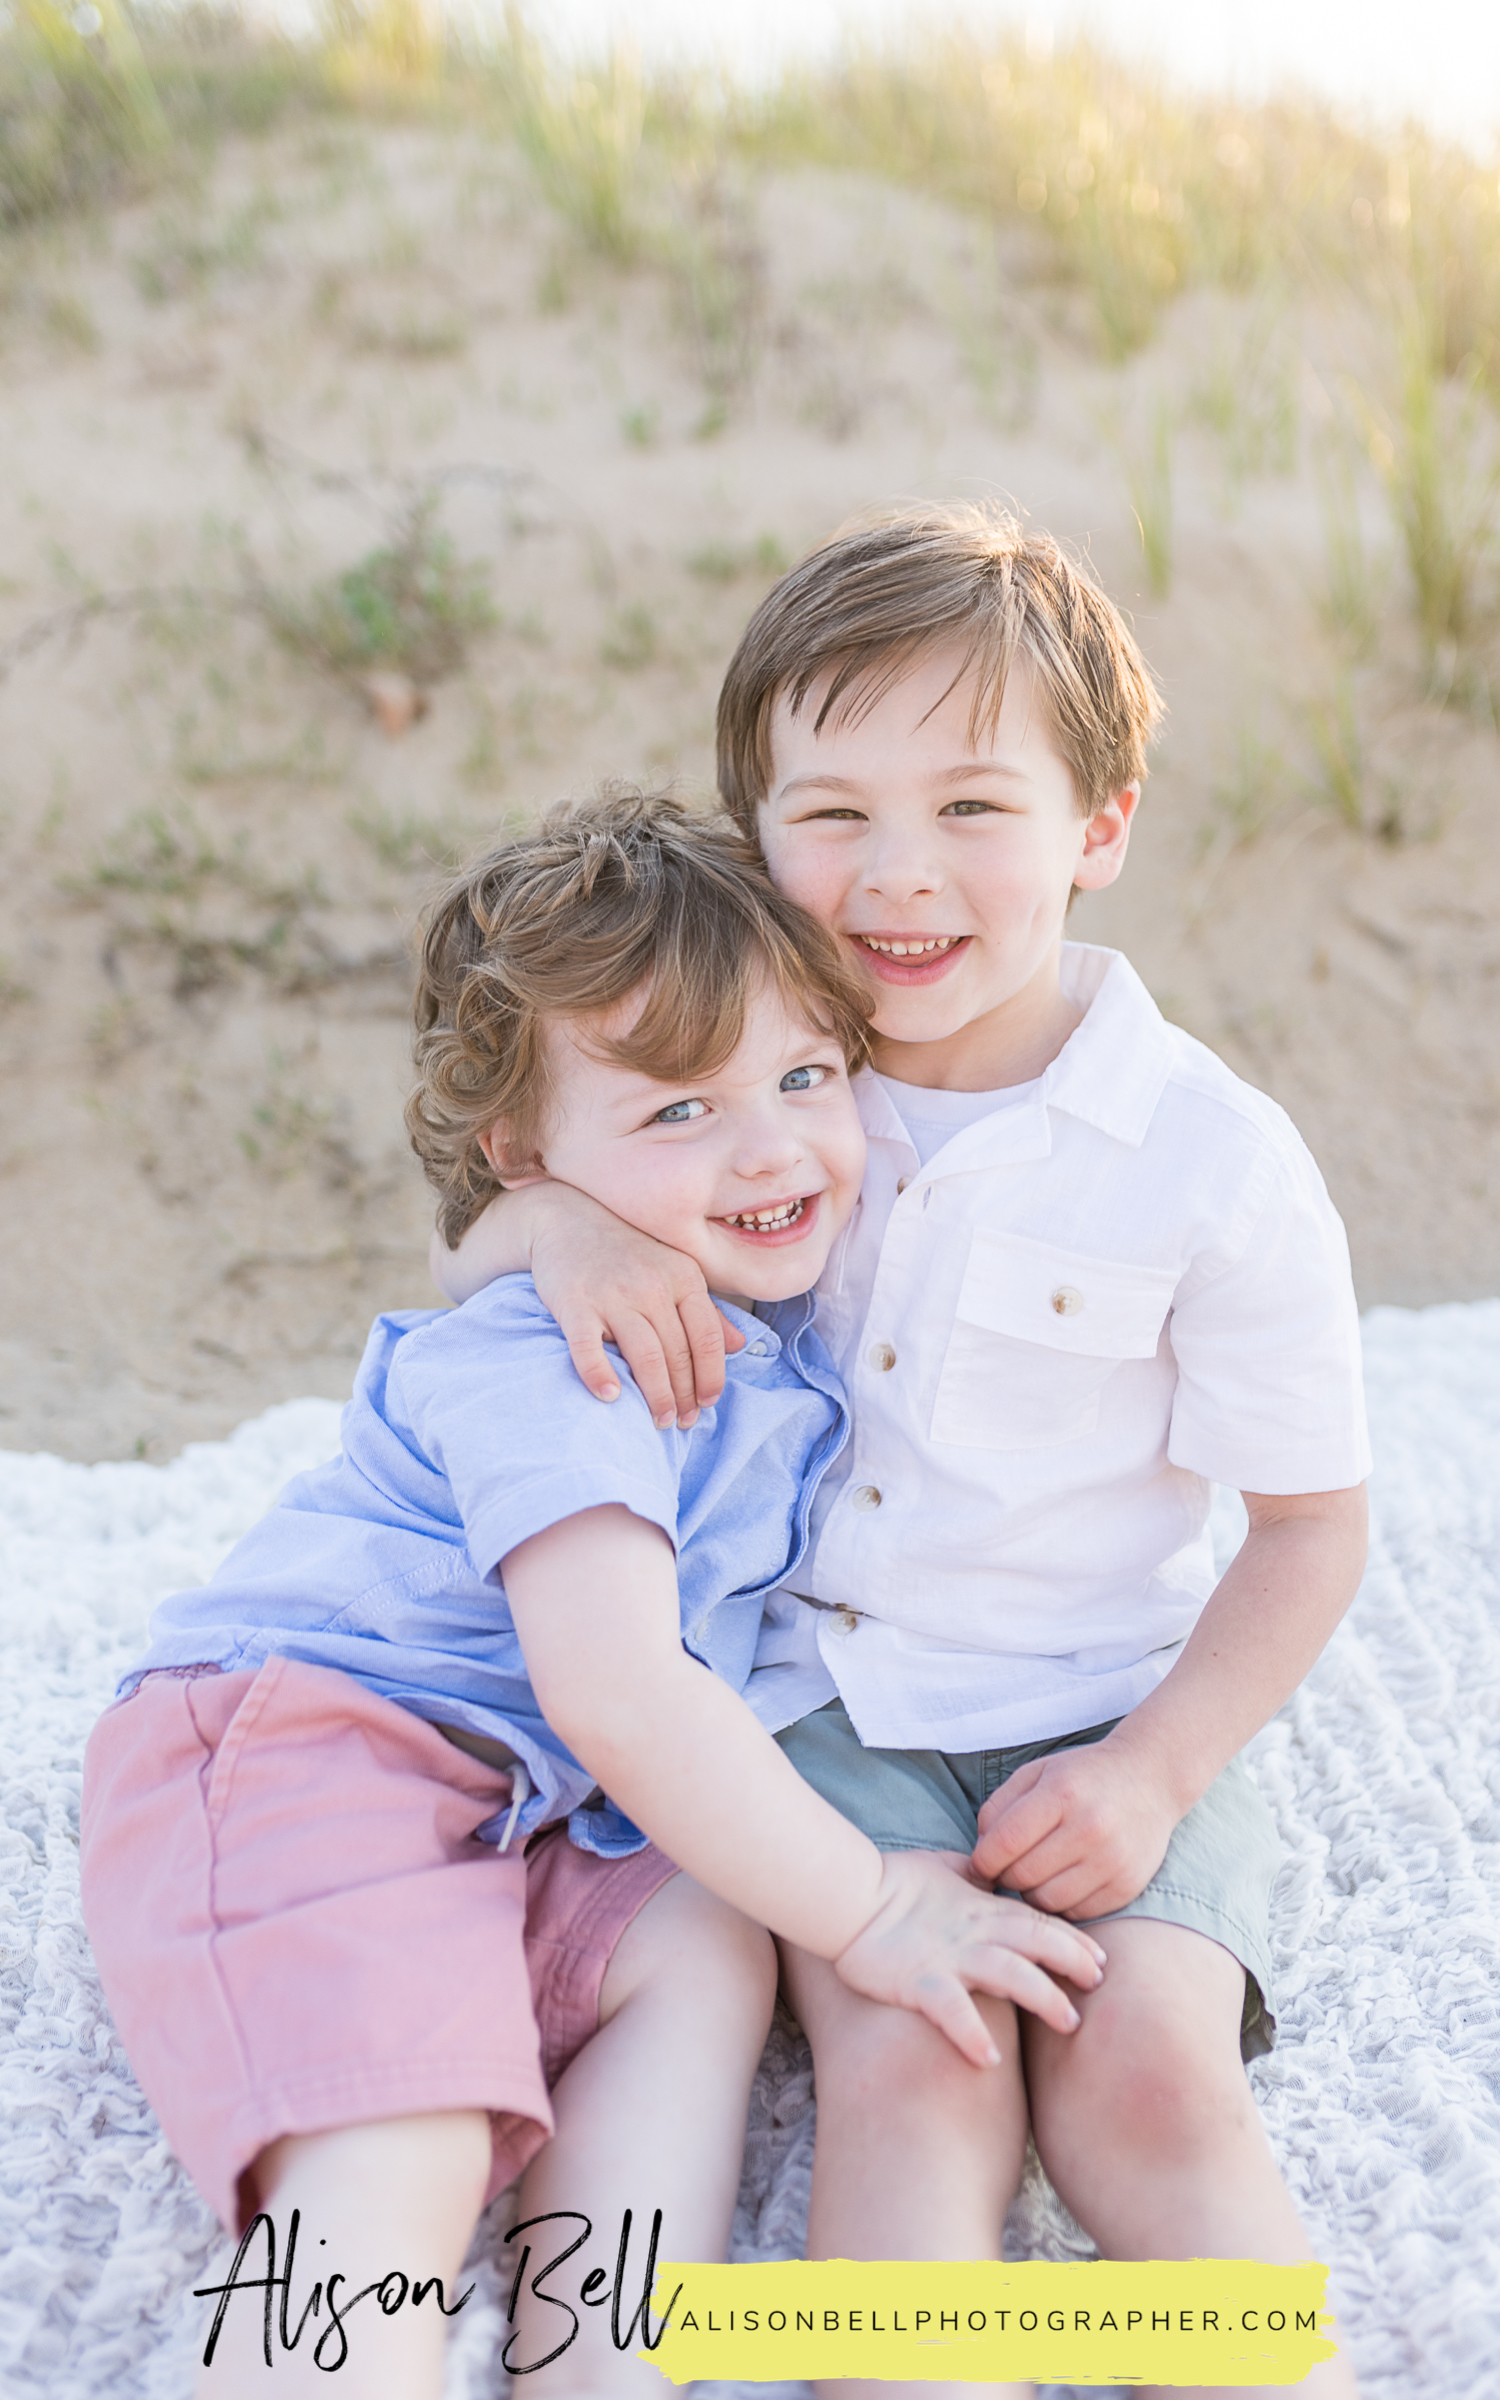 Family photos on the Chesapeake Bay in Viriginia beach. Two boys, family of four